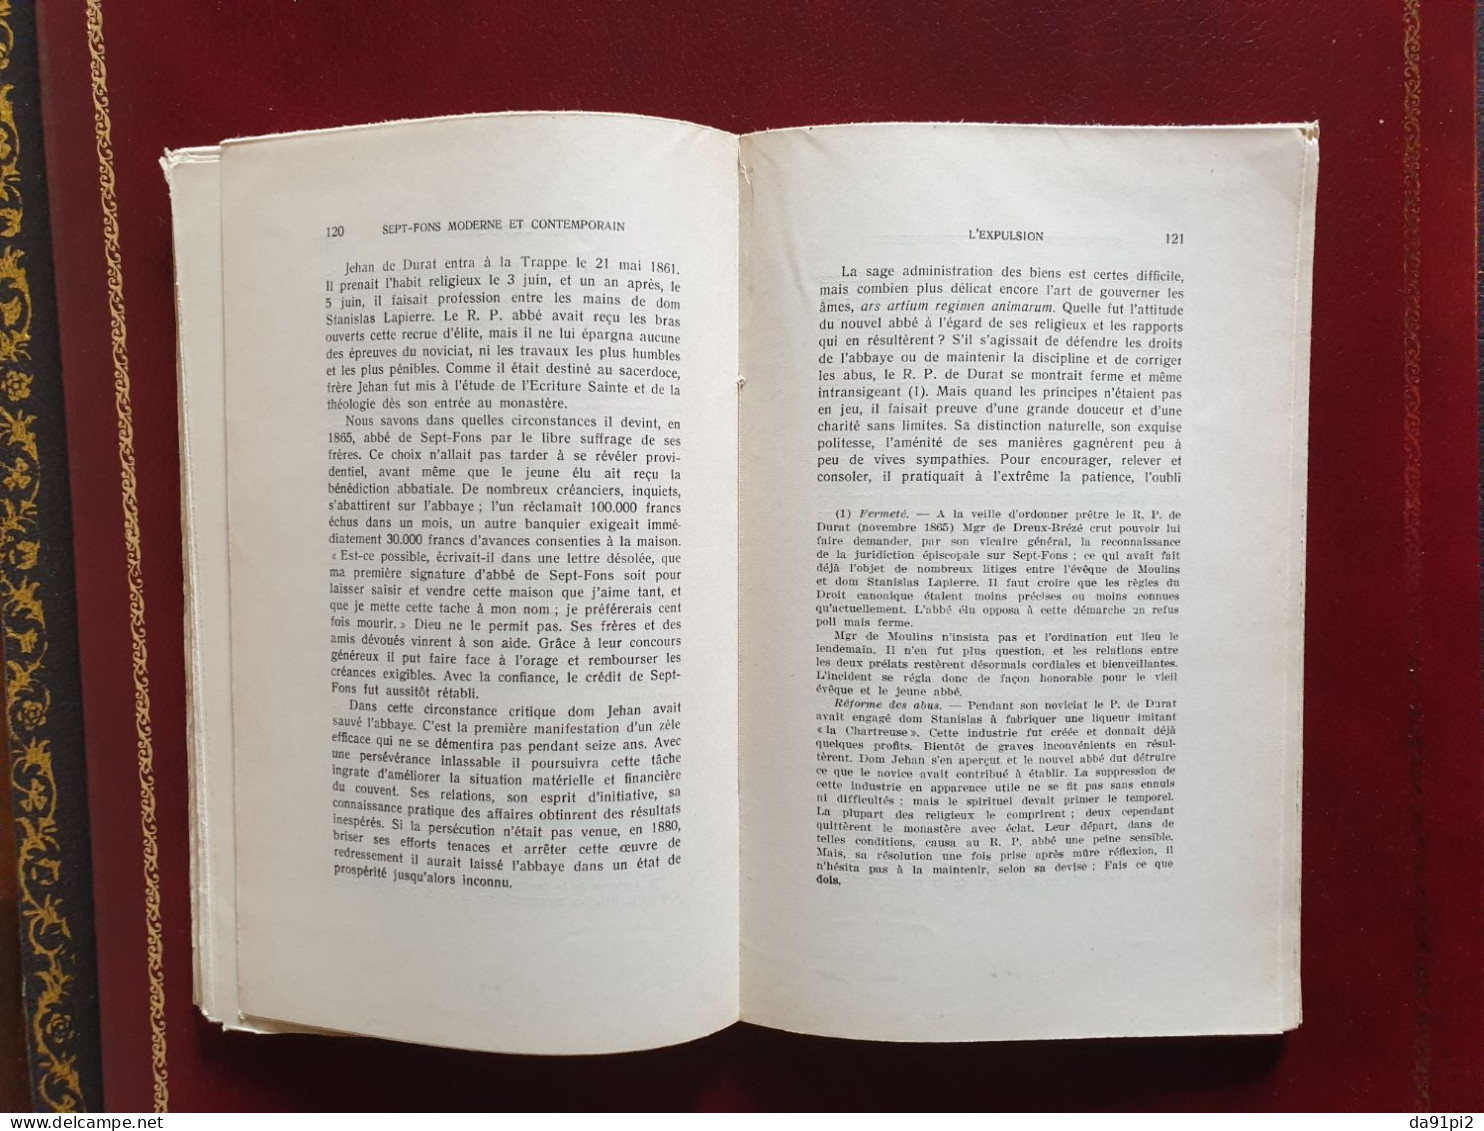 Sept-Fons Histoire 2 tomes l'ancien Sept-Fons et Sept-Fons moderne et contemporain Allier 1938 EO Edition originale